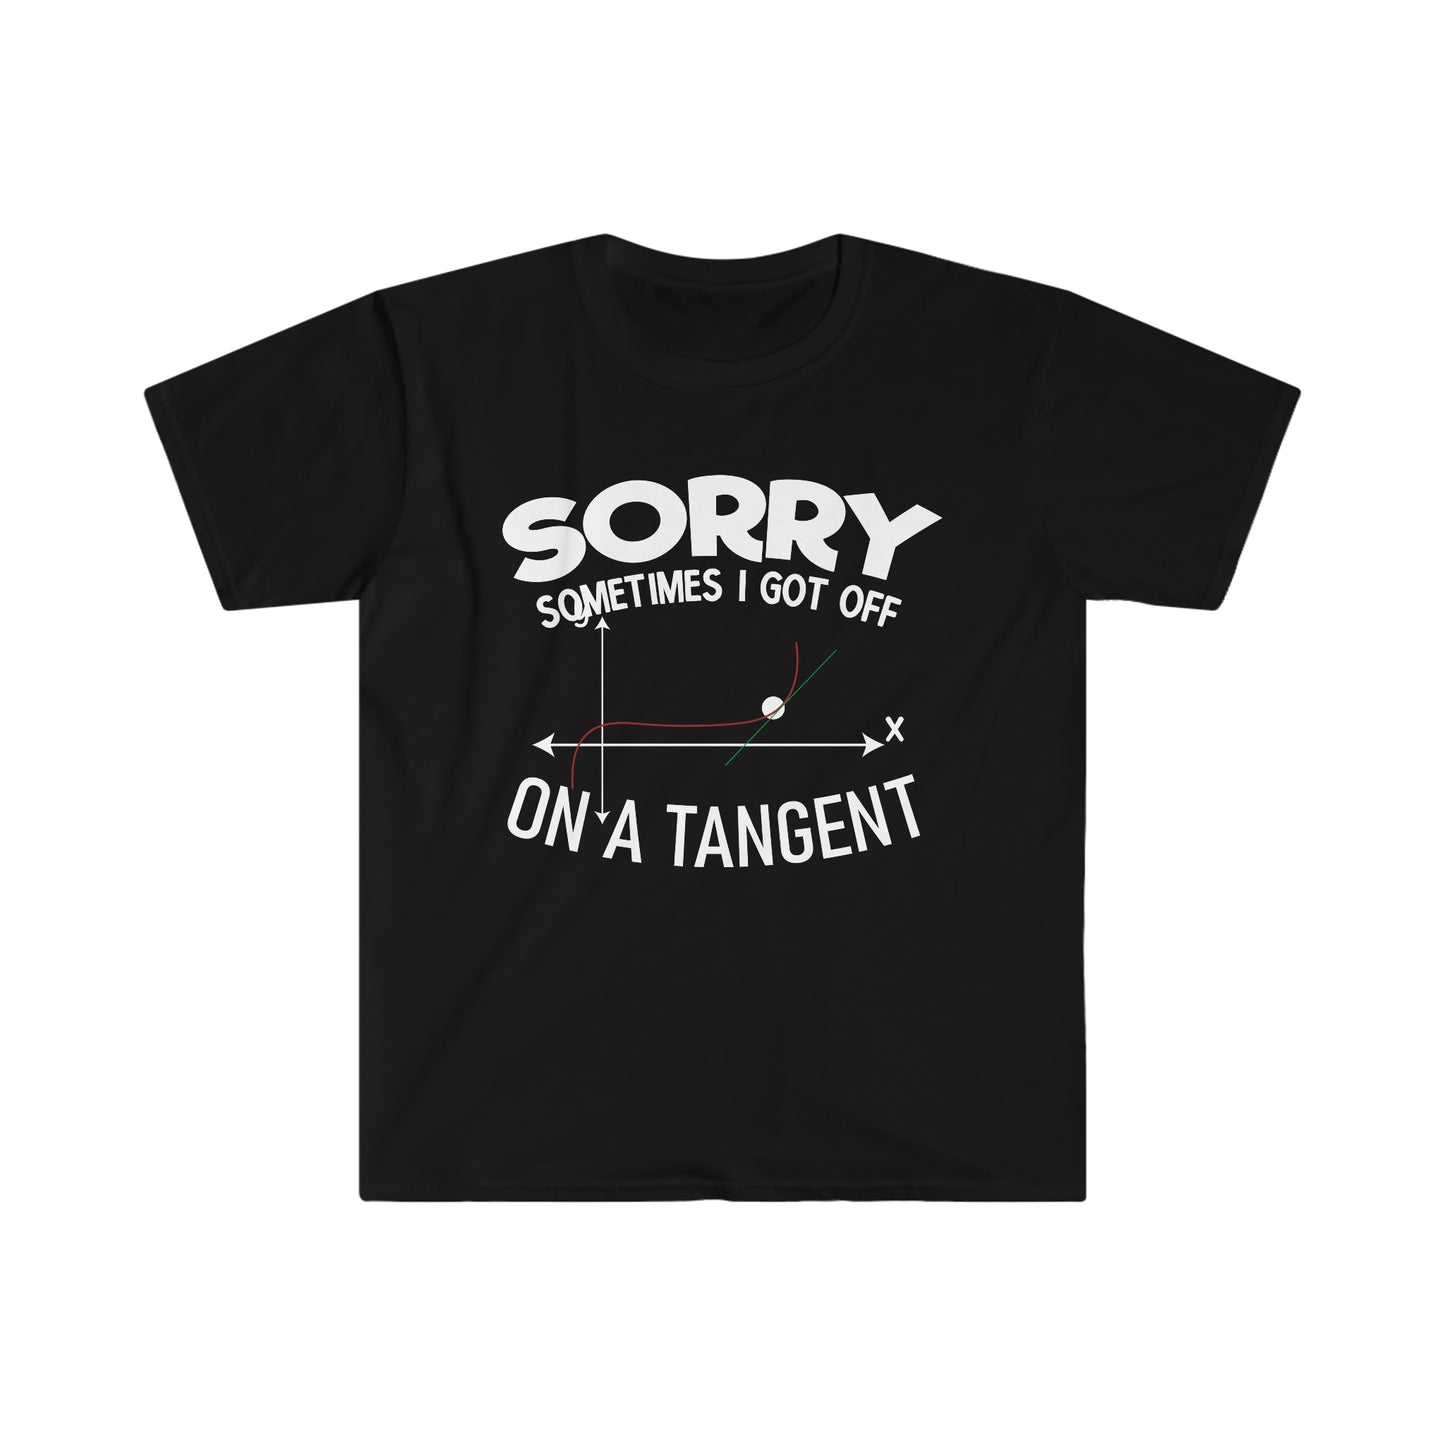 Tangent T-Shirt